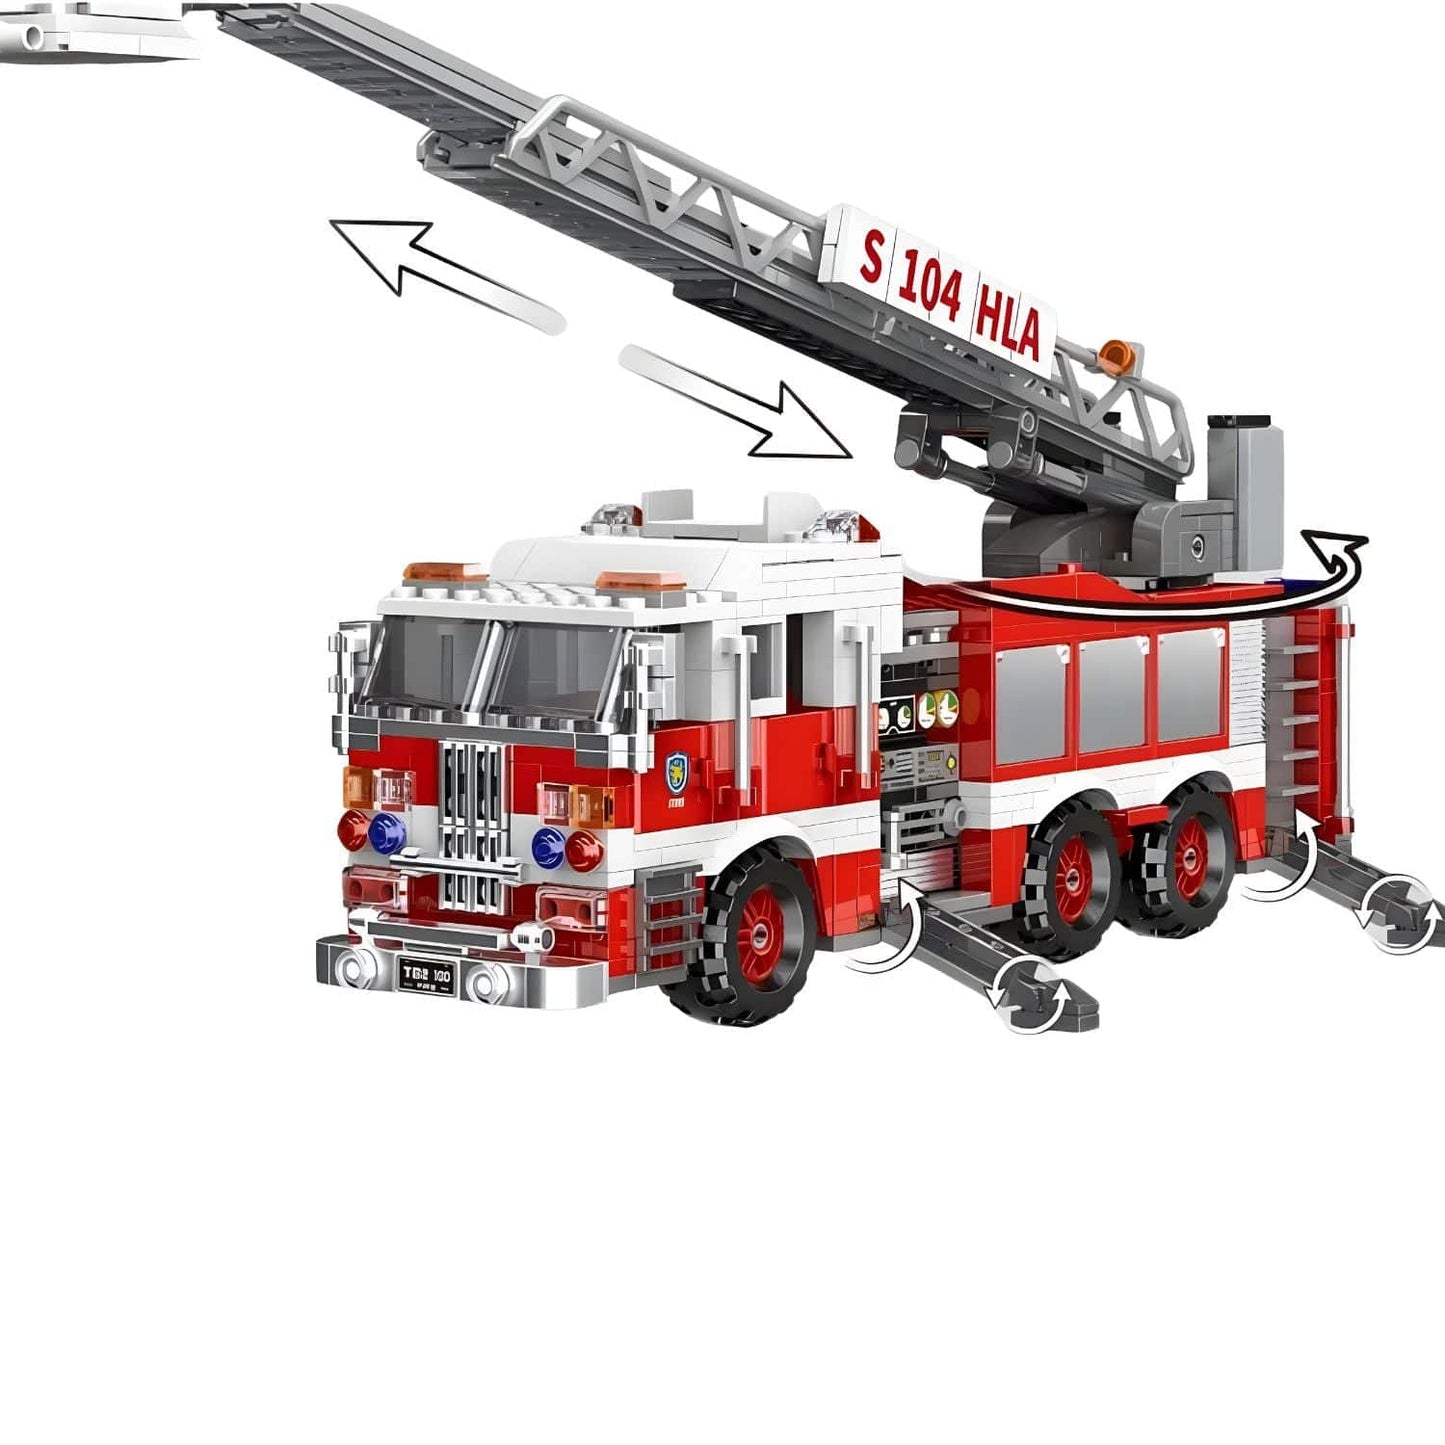 Maquette Camion de pompier Pièces d'Exceptions Véhicules Lourds | Camion de pompier